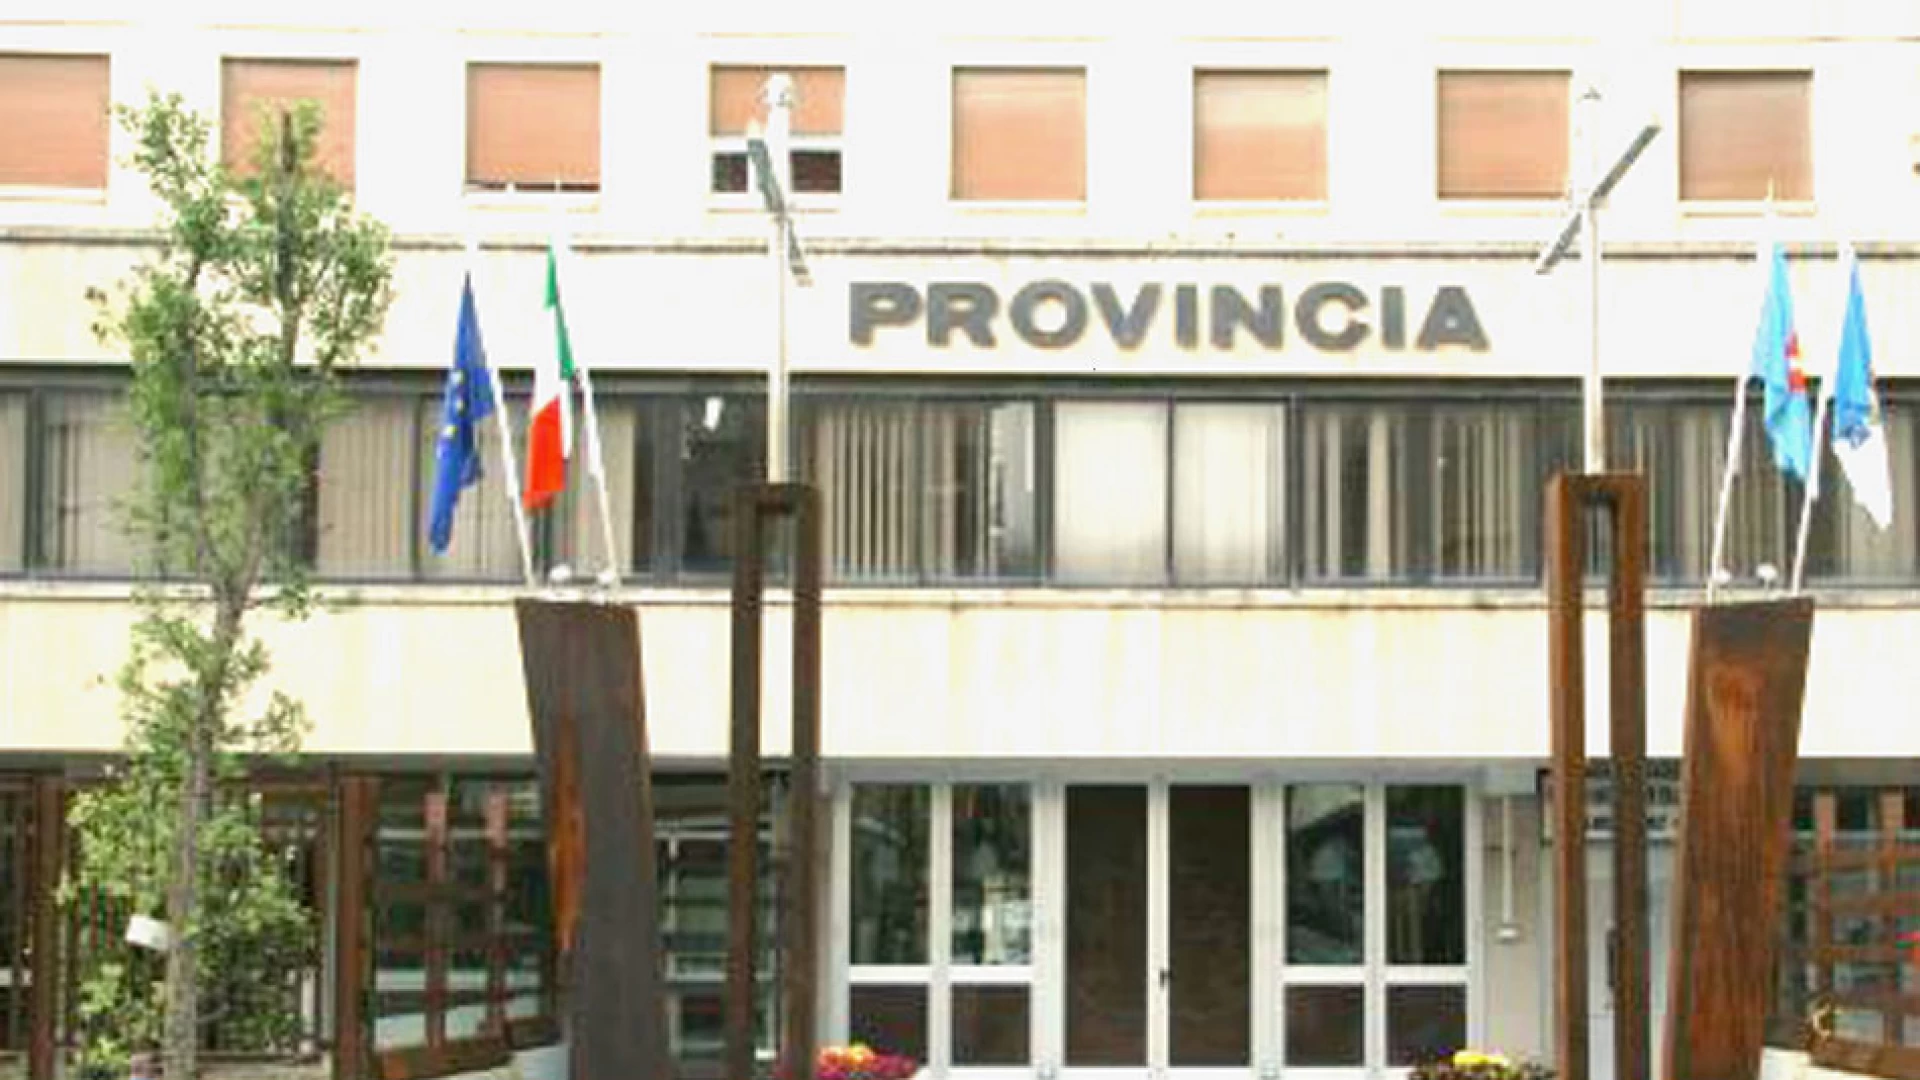 Isernia: eventi meteo del 5 e 6 marzo 2015 alla Provincia un milione di euro. La soddisfazione del presidente Coia e del consigliere Matticoli.